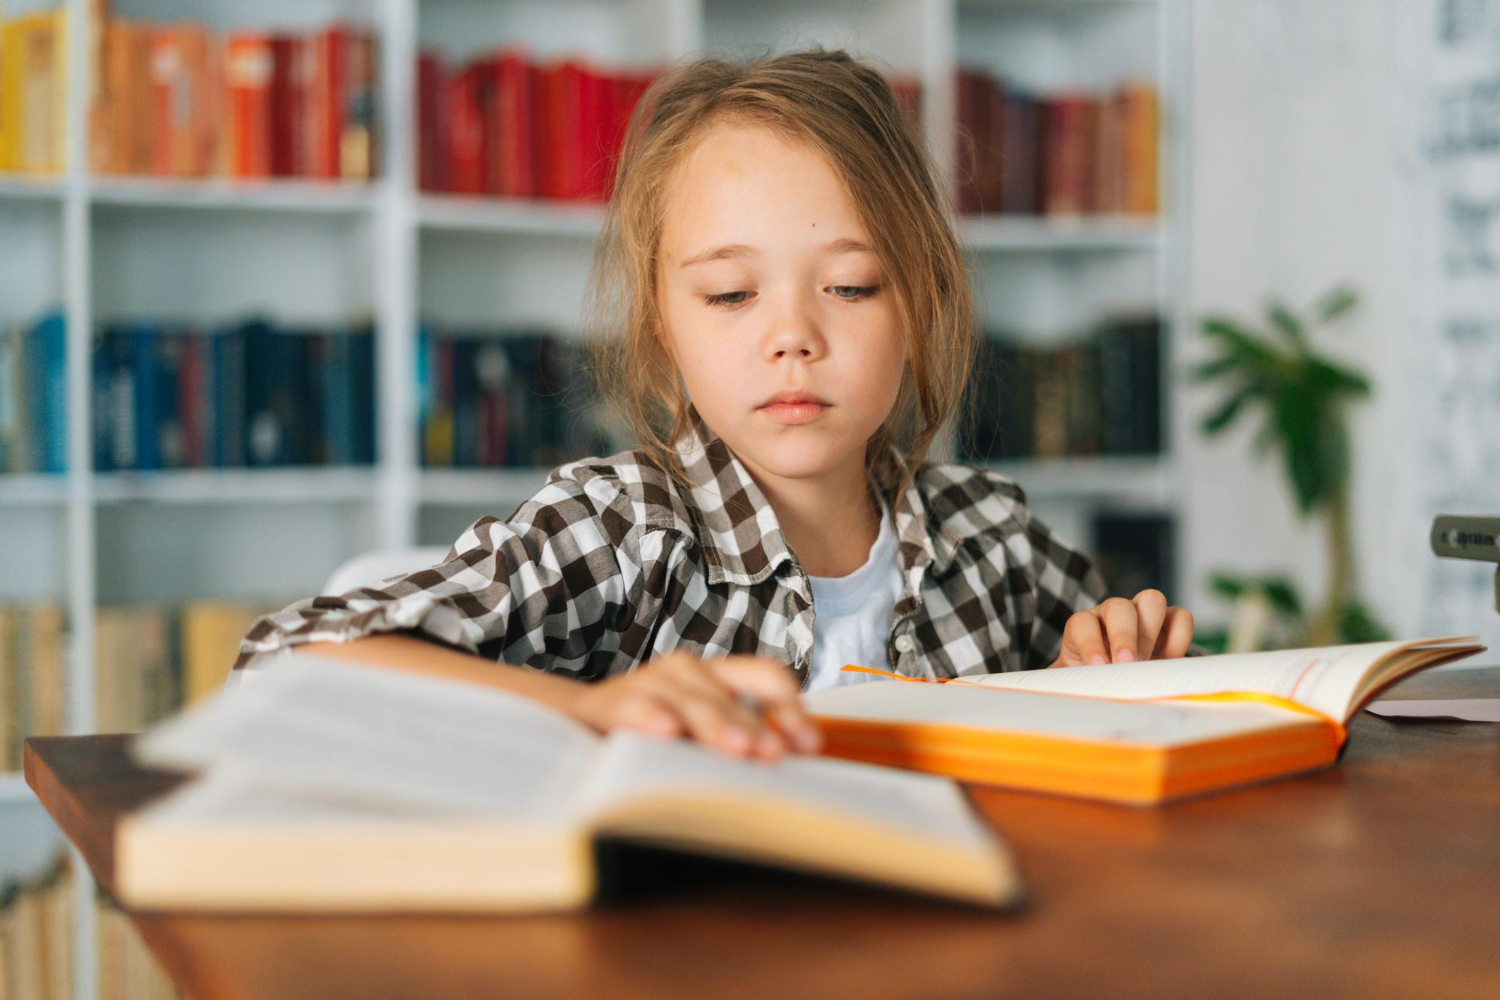 Mik legyenek a kötelező olvasmányok? - Ezeket a könyveket szavazta meg a legtöbb szülő és pedagógus